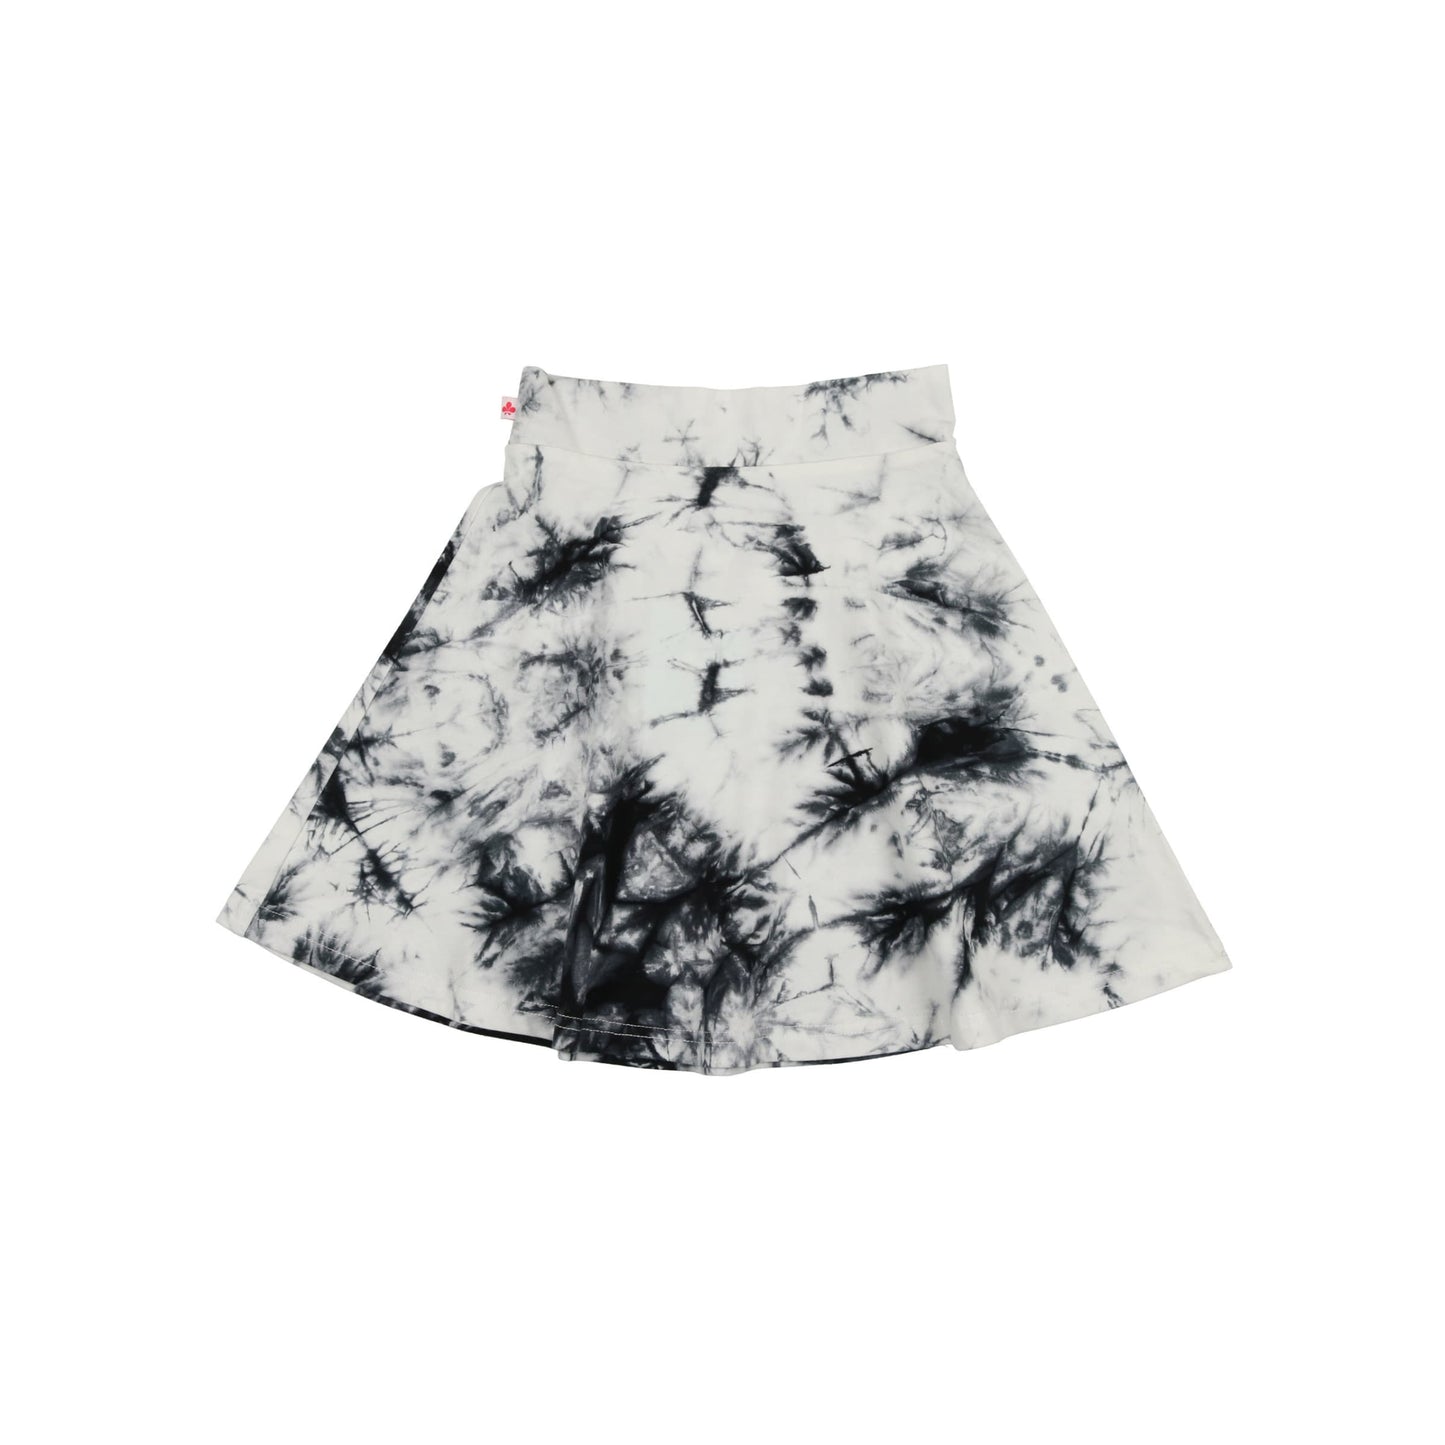 Tie Dye Camp Skirt- Black/White